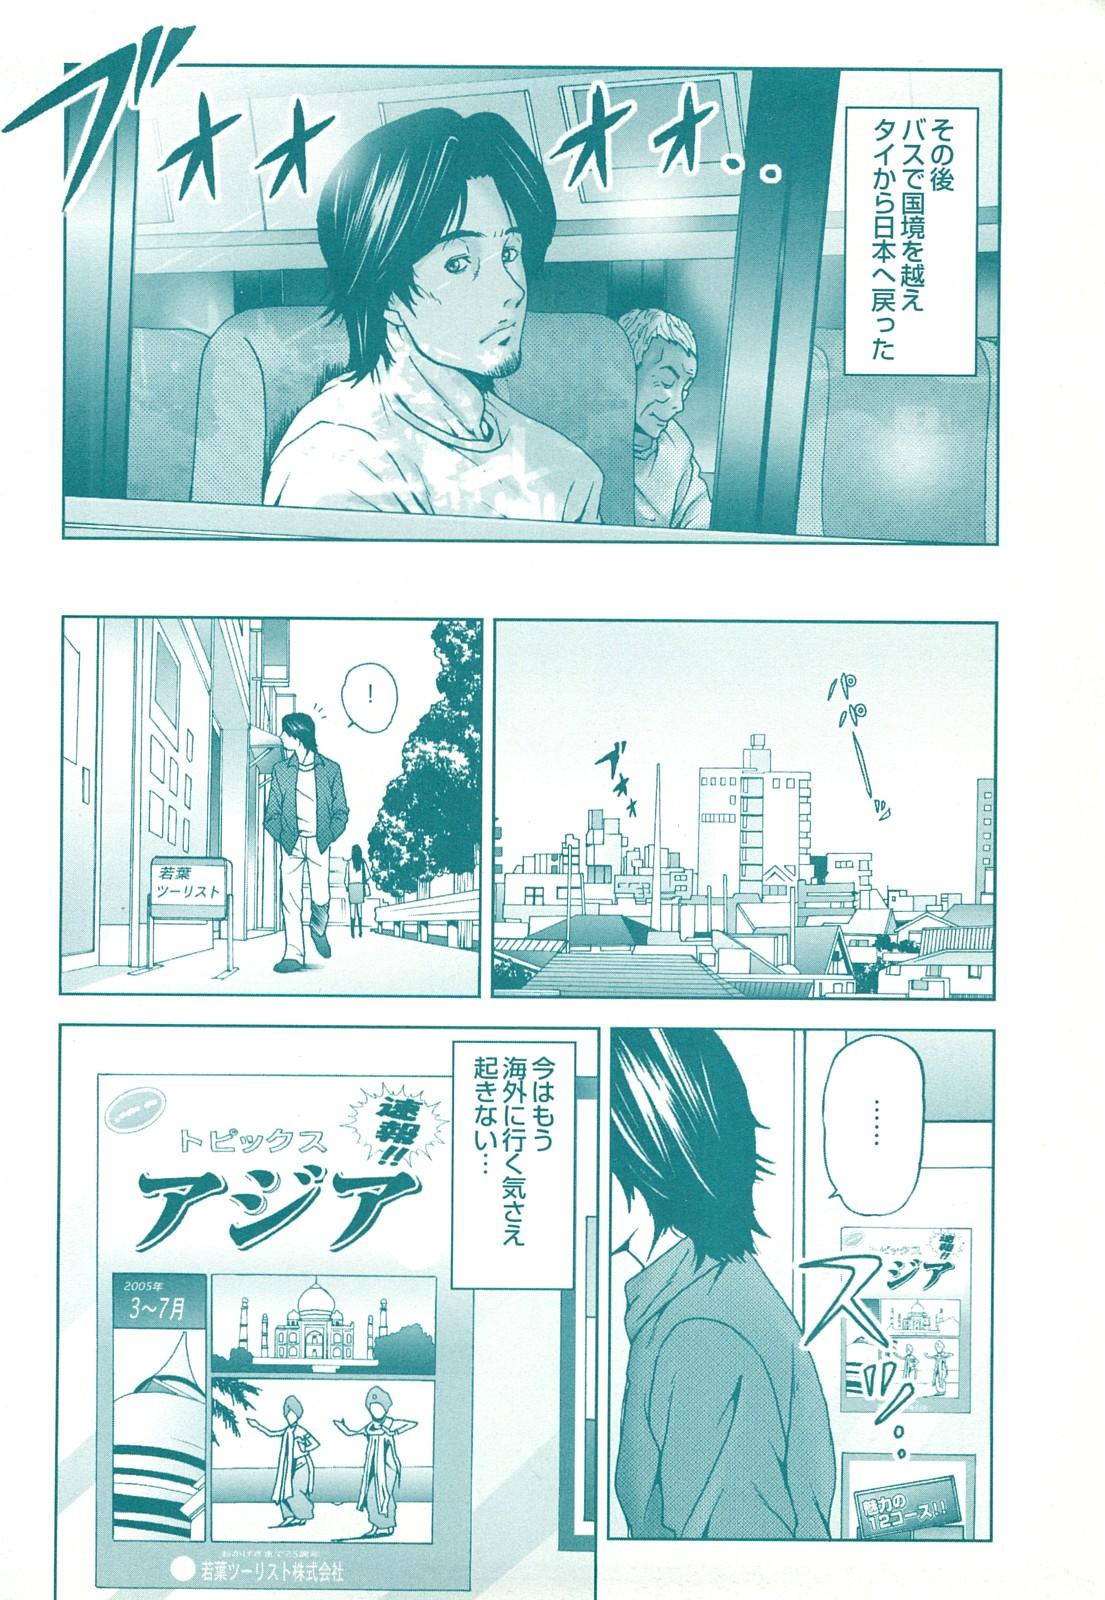 コミック裏モノJAPAN Vol.18 今井のりたつスペシャル号 139